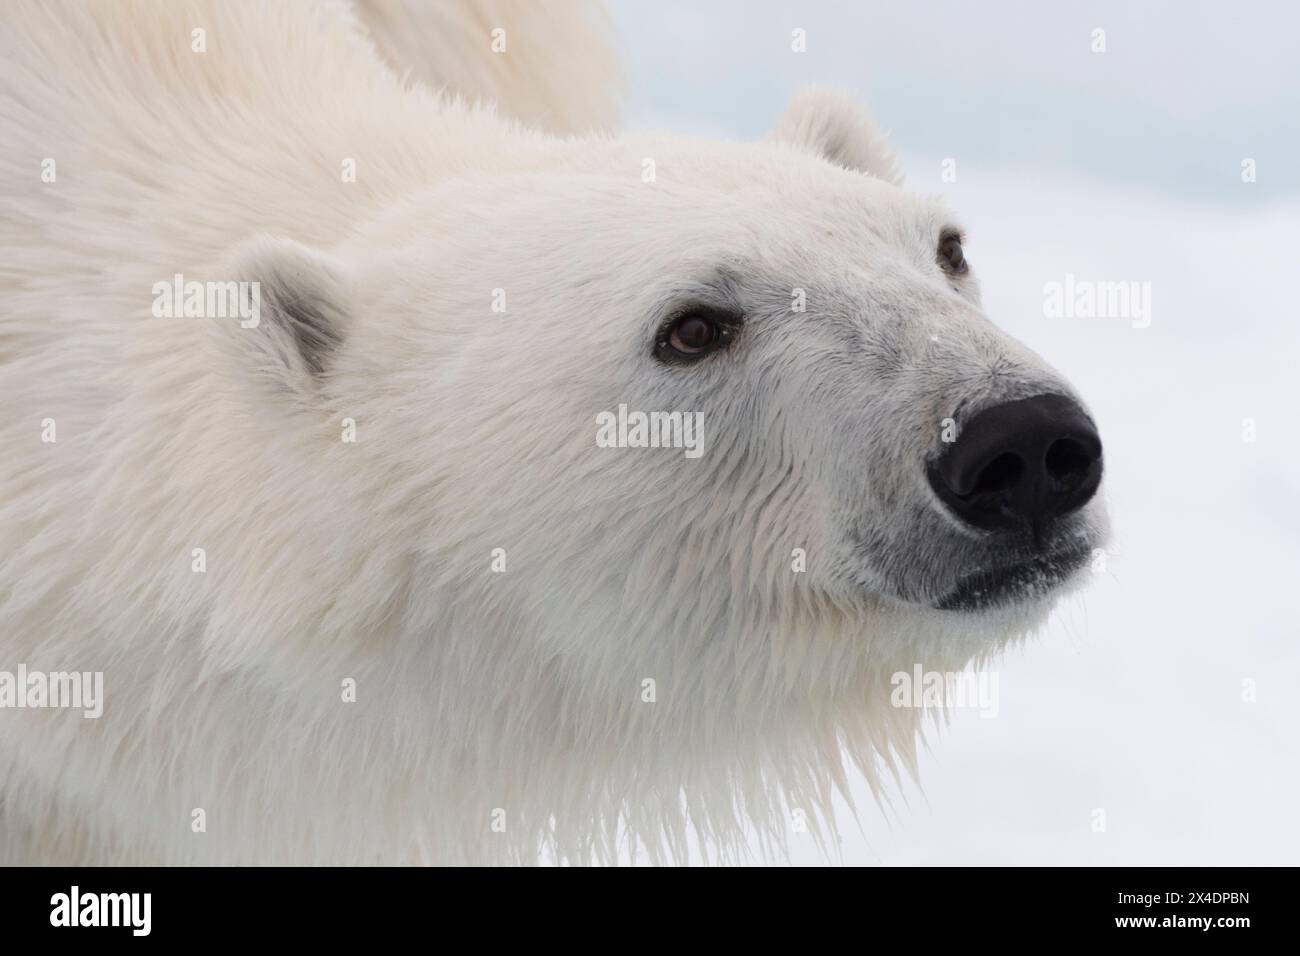 Portrait rapproché d'un ours polaire, Ursus maritimus, sur la banquise. Calotte glaciaire polaire nord, océan Arctique Banque D'Images